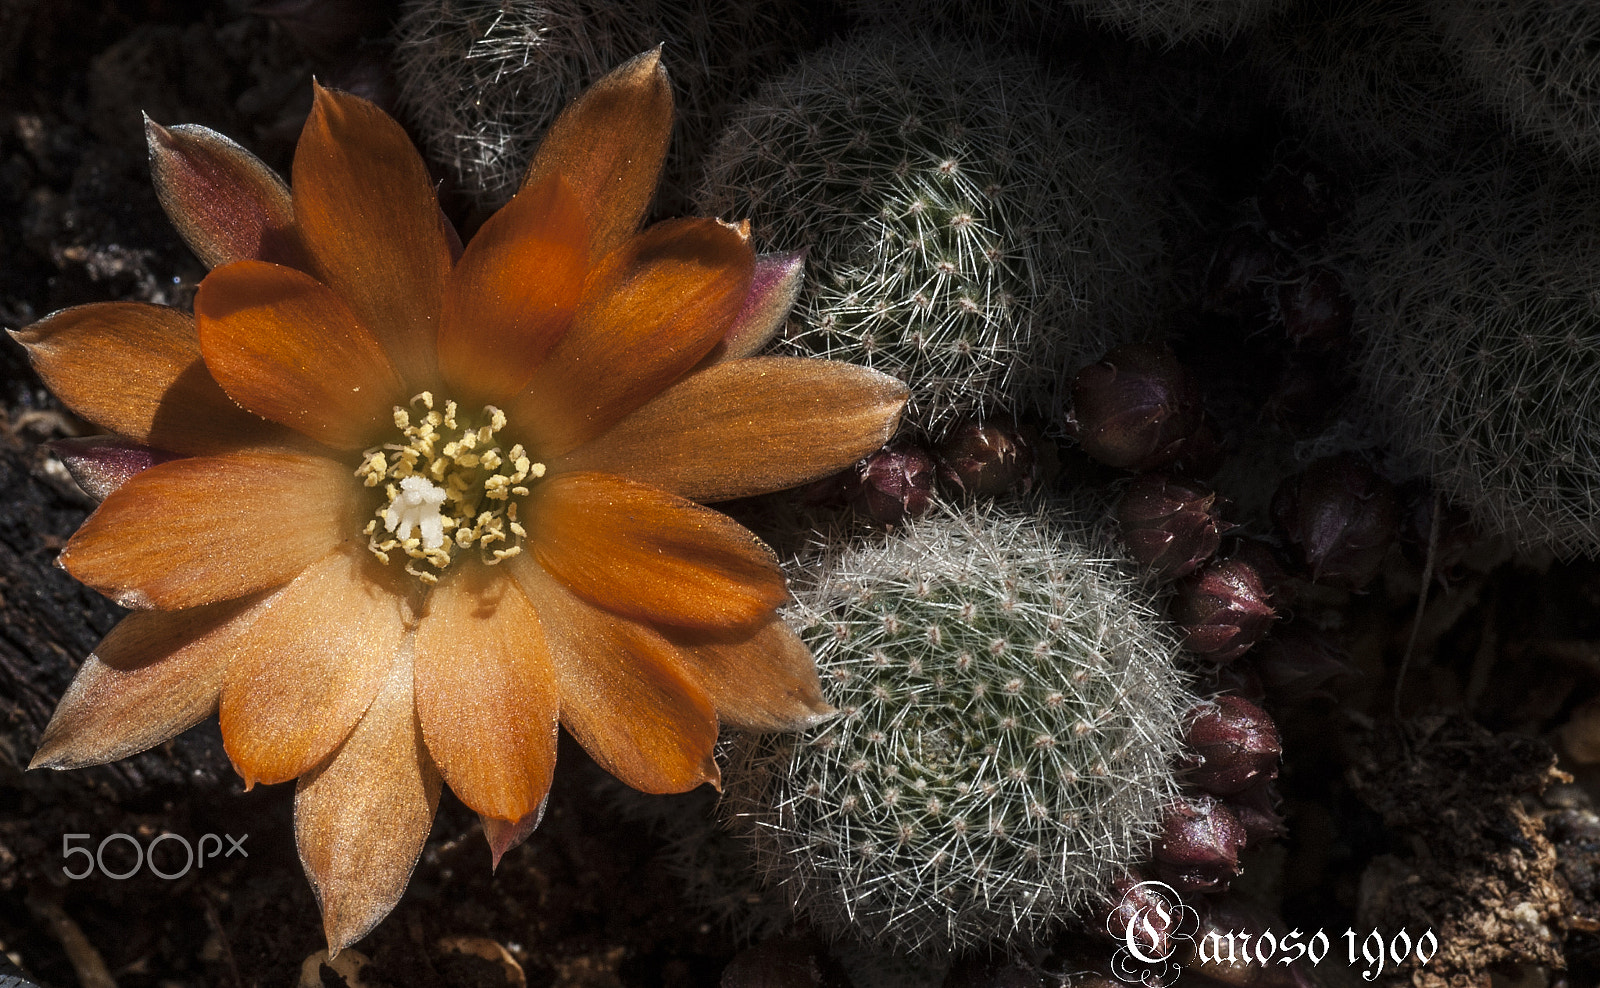 Nikon D700 sample photo. Cactus photography